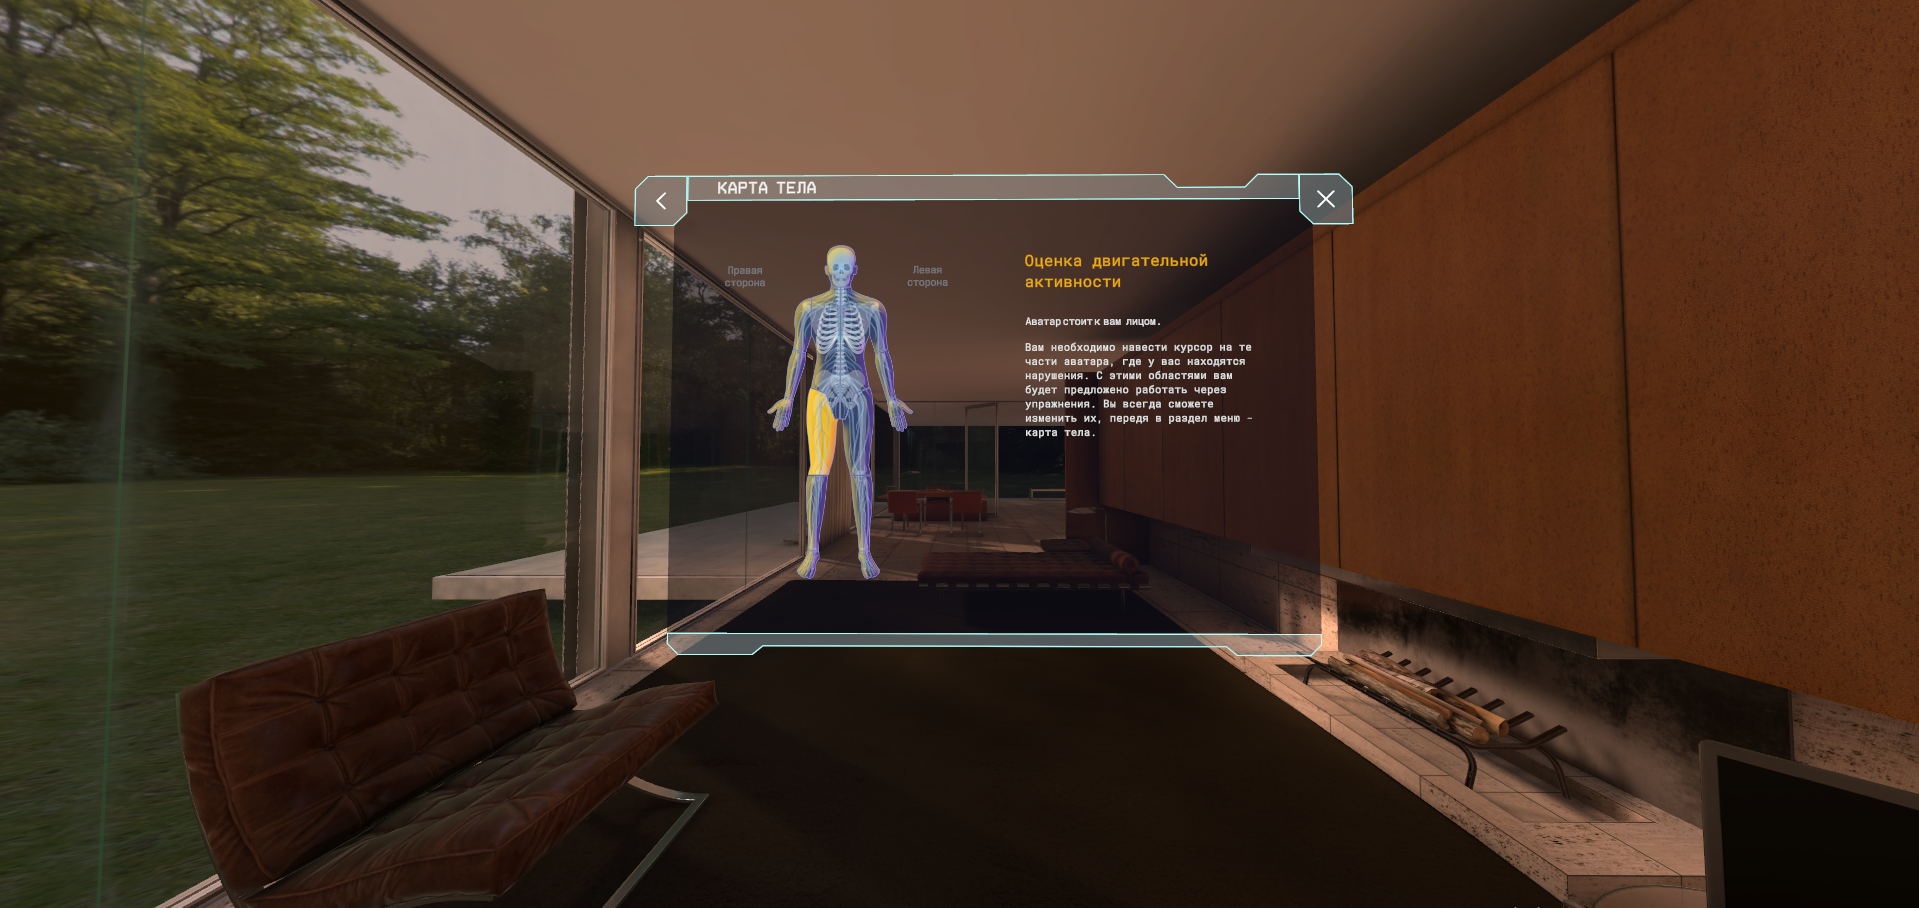 Интерфейс VR GO. Фото: архив героя